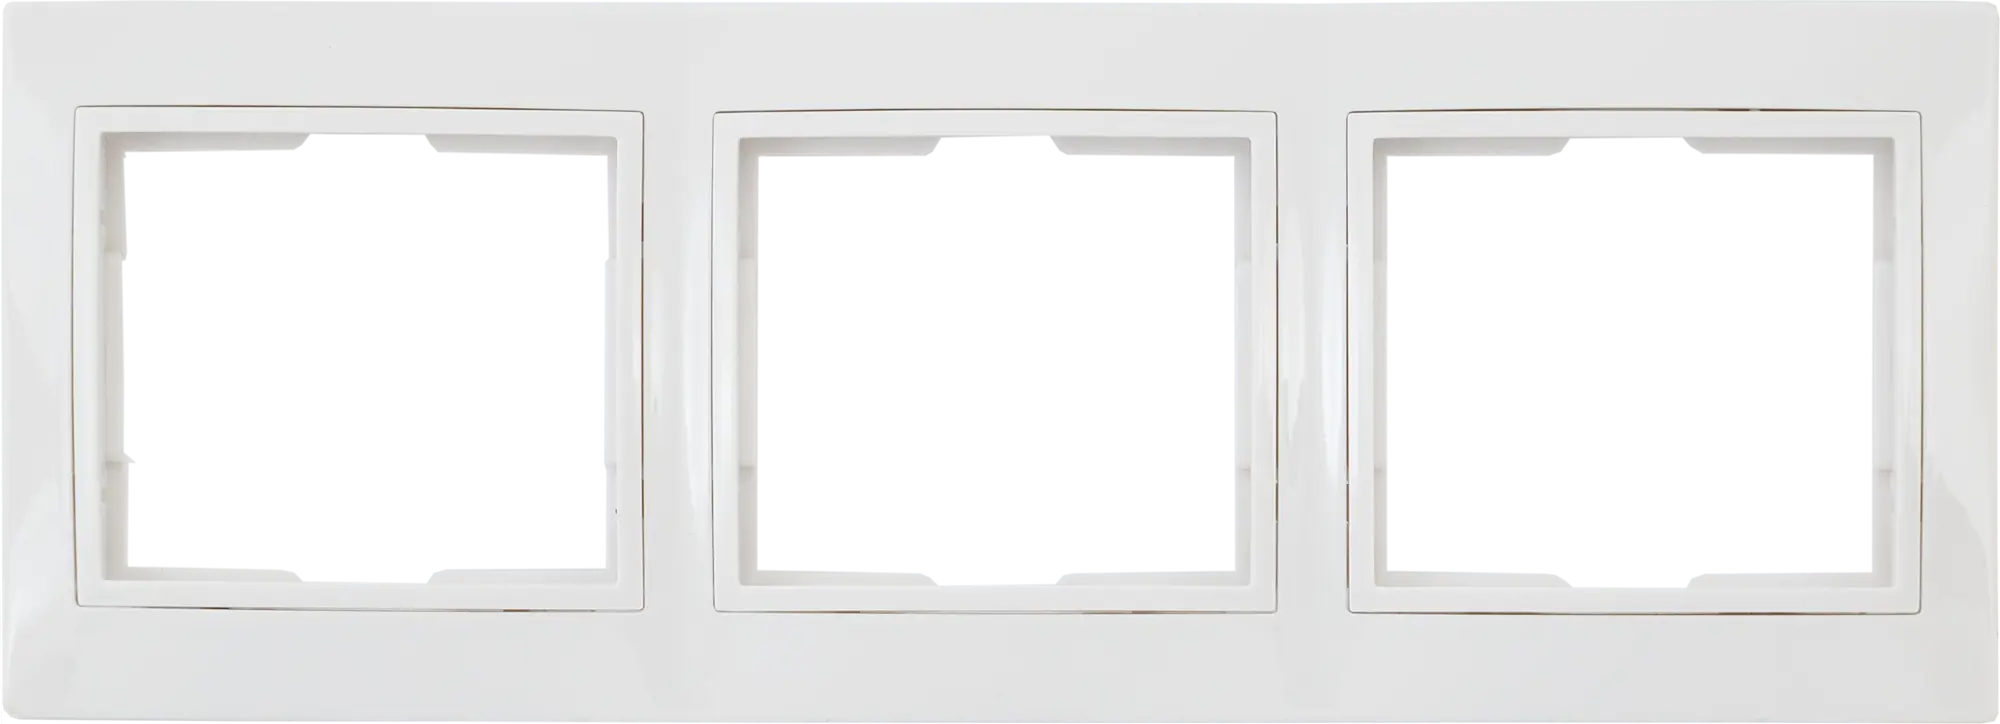 Рамка для розеток и выключателей горизонтальная Таймыр 3 поста, цвет белый горизонтальная бухгалтерская книга attache